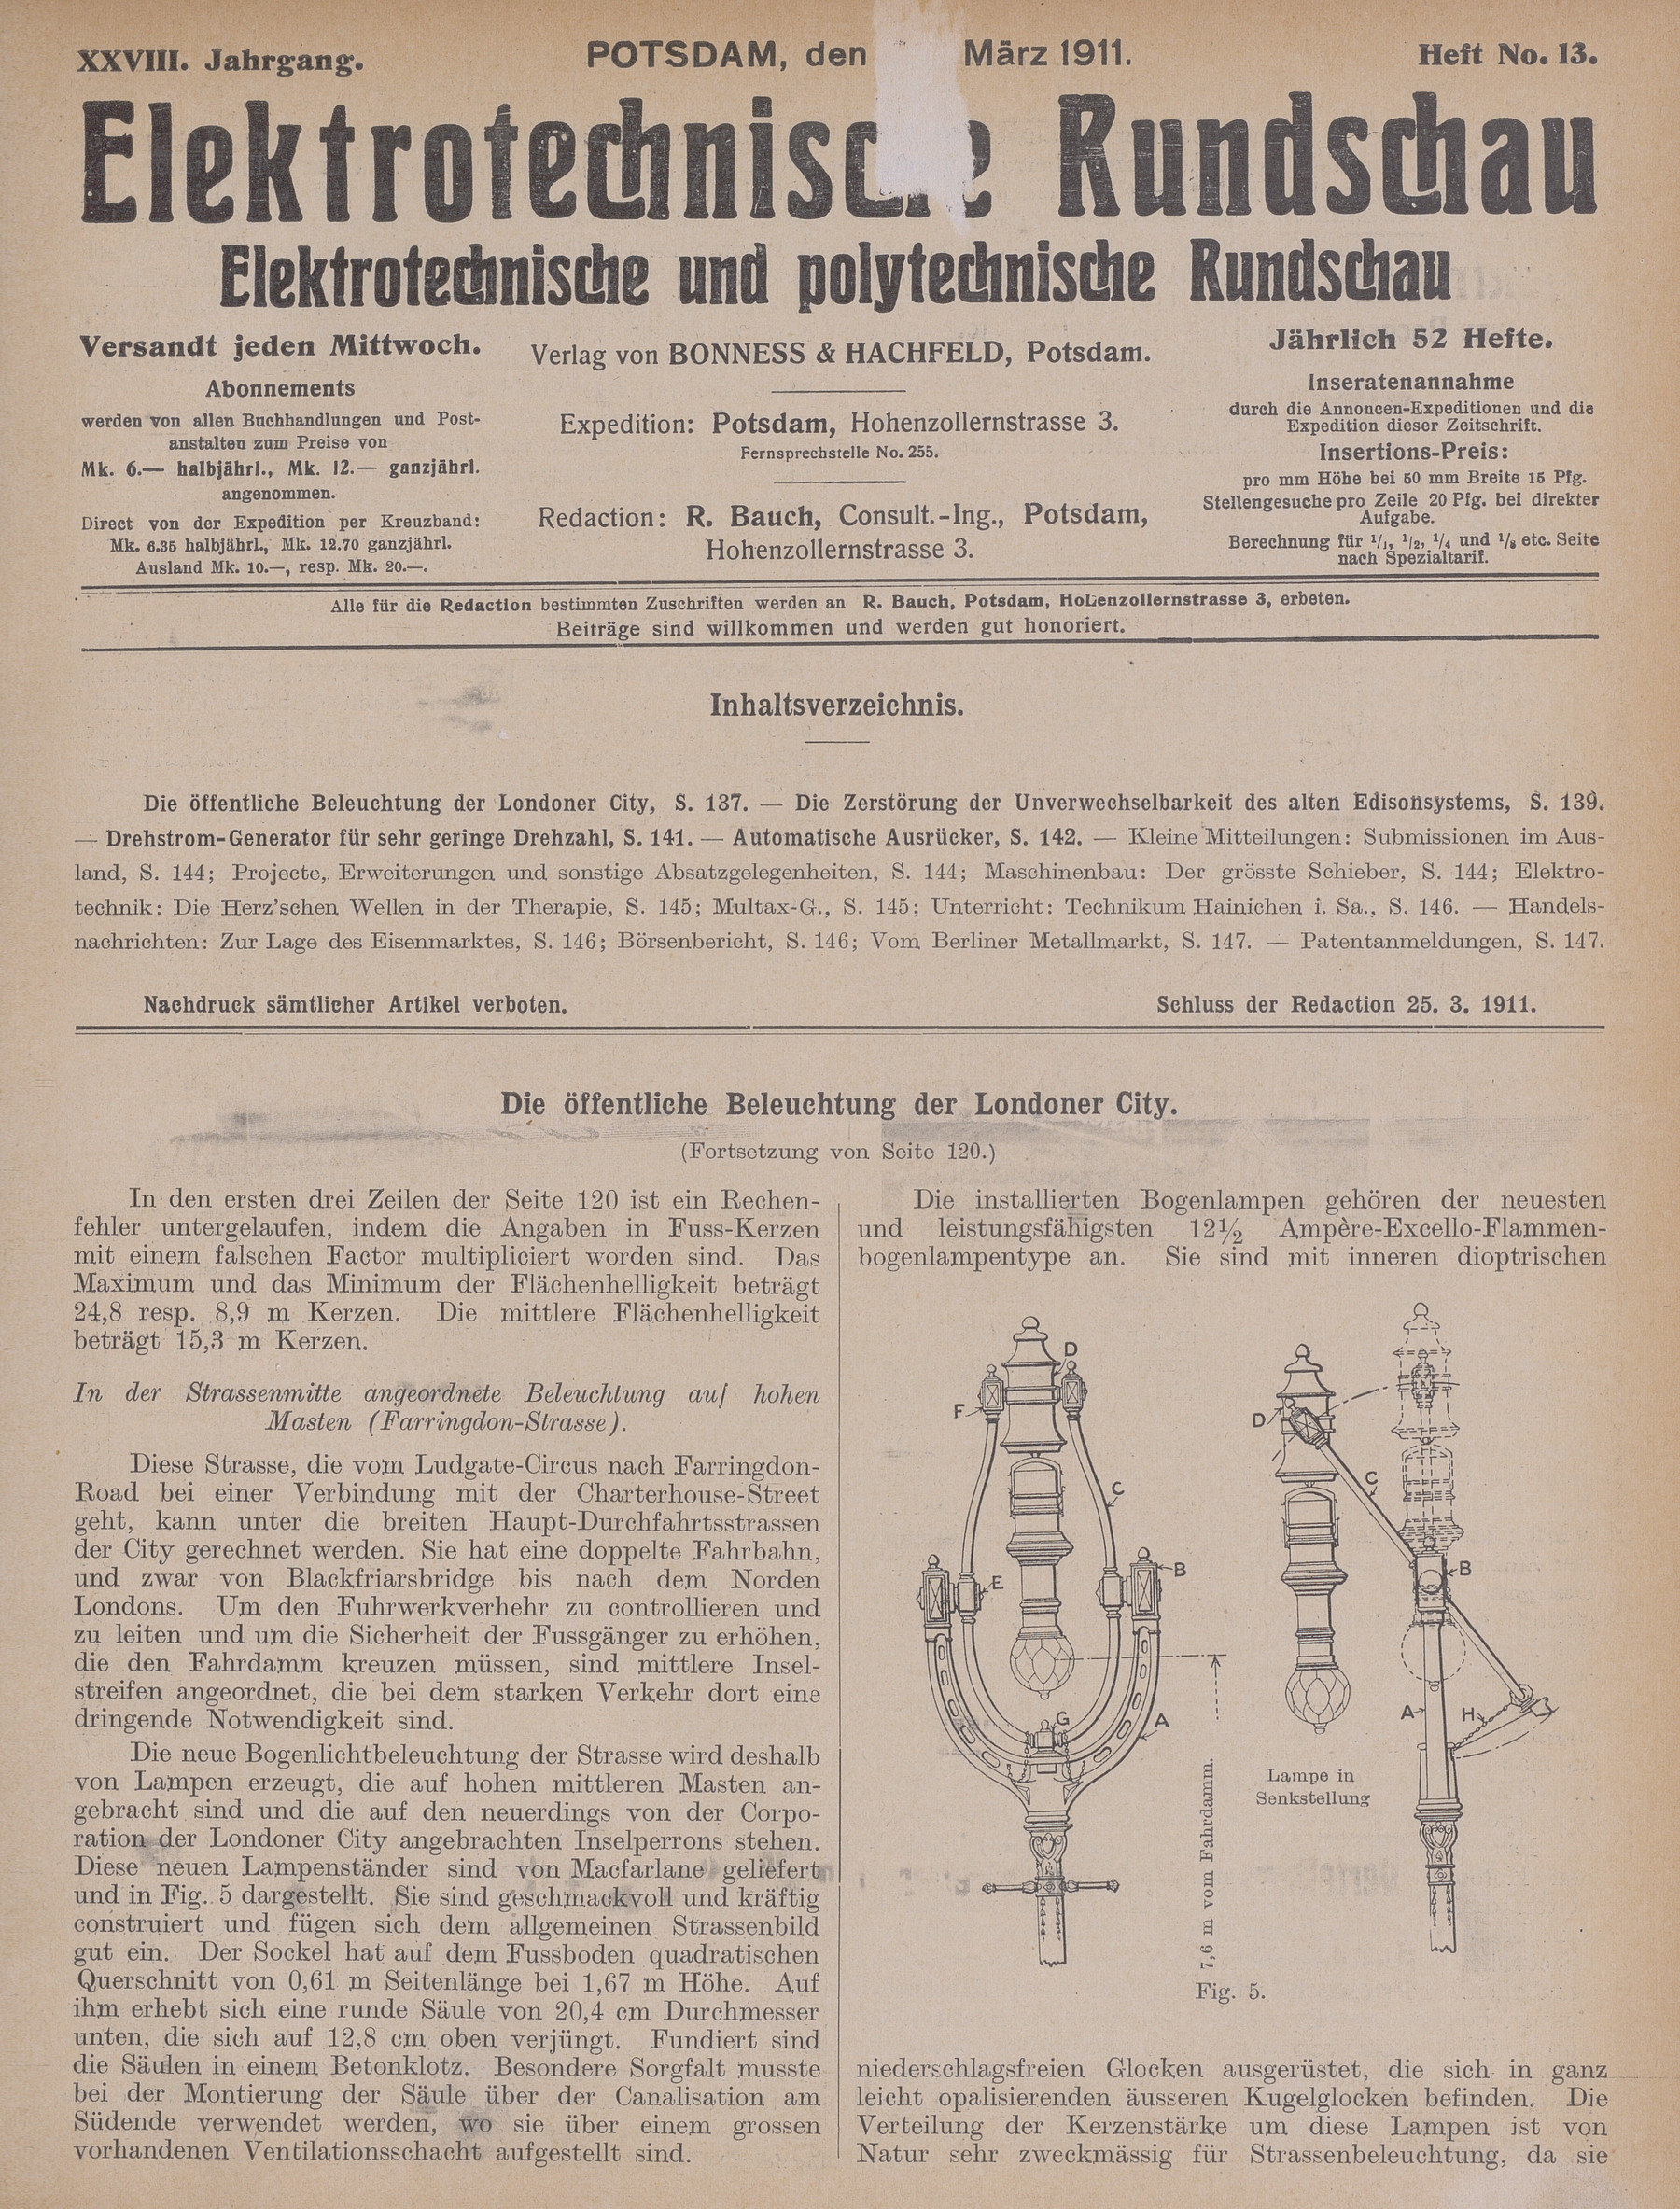 Elektrotechnische Rundschau : Elektrotechnische und polytechnische Rundschau, XXVIII. Jahrgang, Heft No. 13